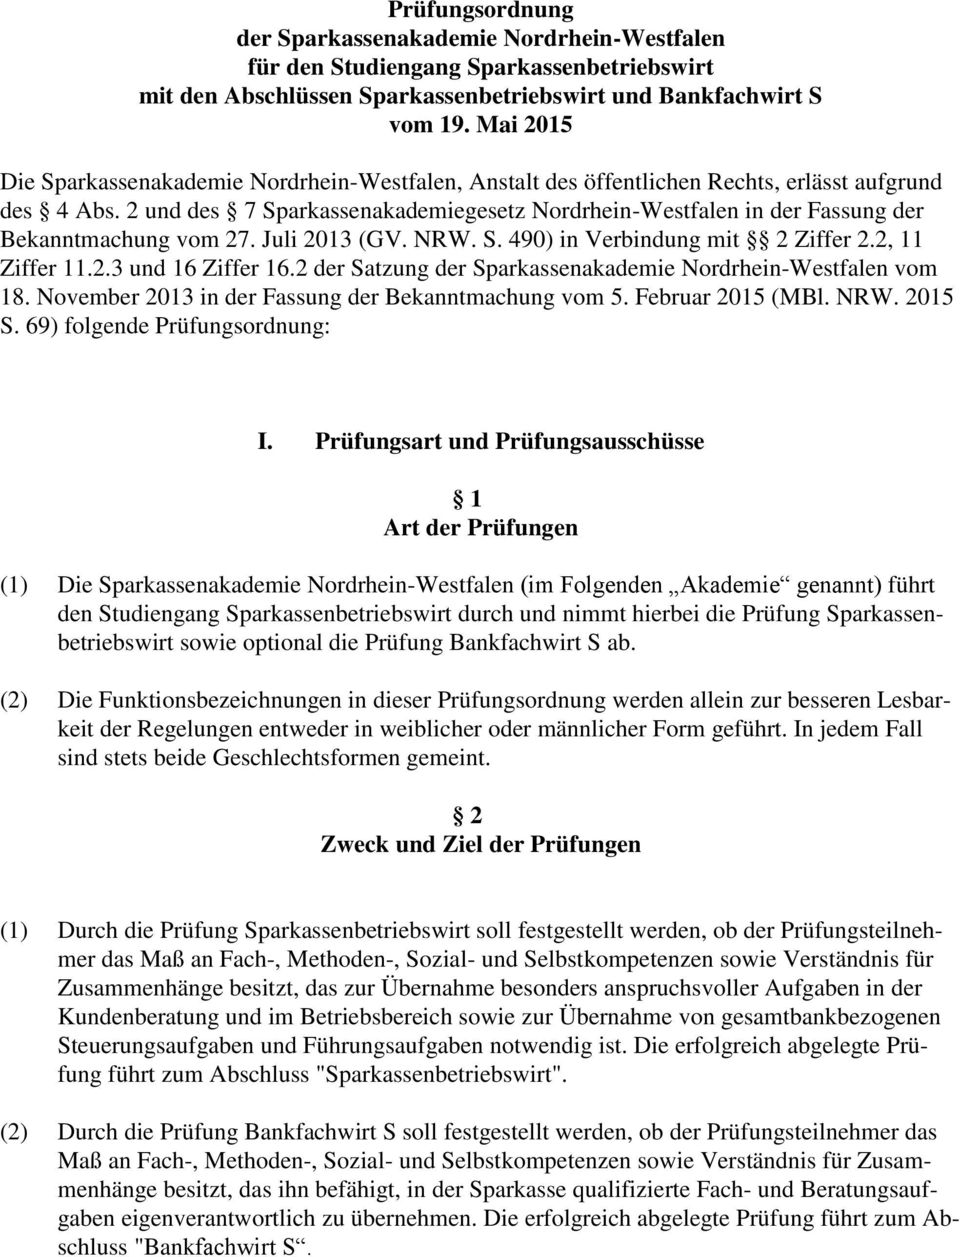 2 und des 7 Sparkassenakademiegesetz Nordrhein-Westfalen in der Fassung der Bekanntmachung vom 27. Juli 2013 (GV. NRW. S. 490) in Verbindung mit 2 Ziffer 2.2, 11 Ziffer 11.2.3 und 16 Ziffer 16.